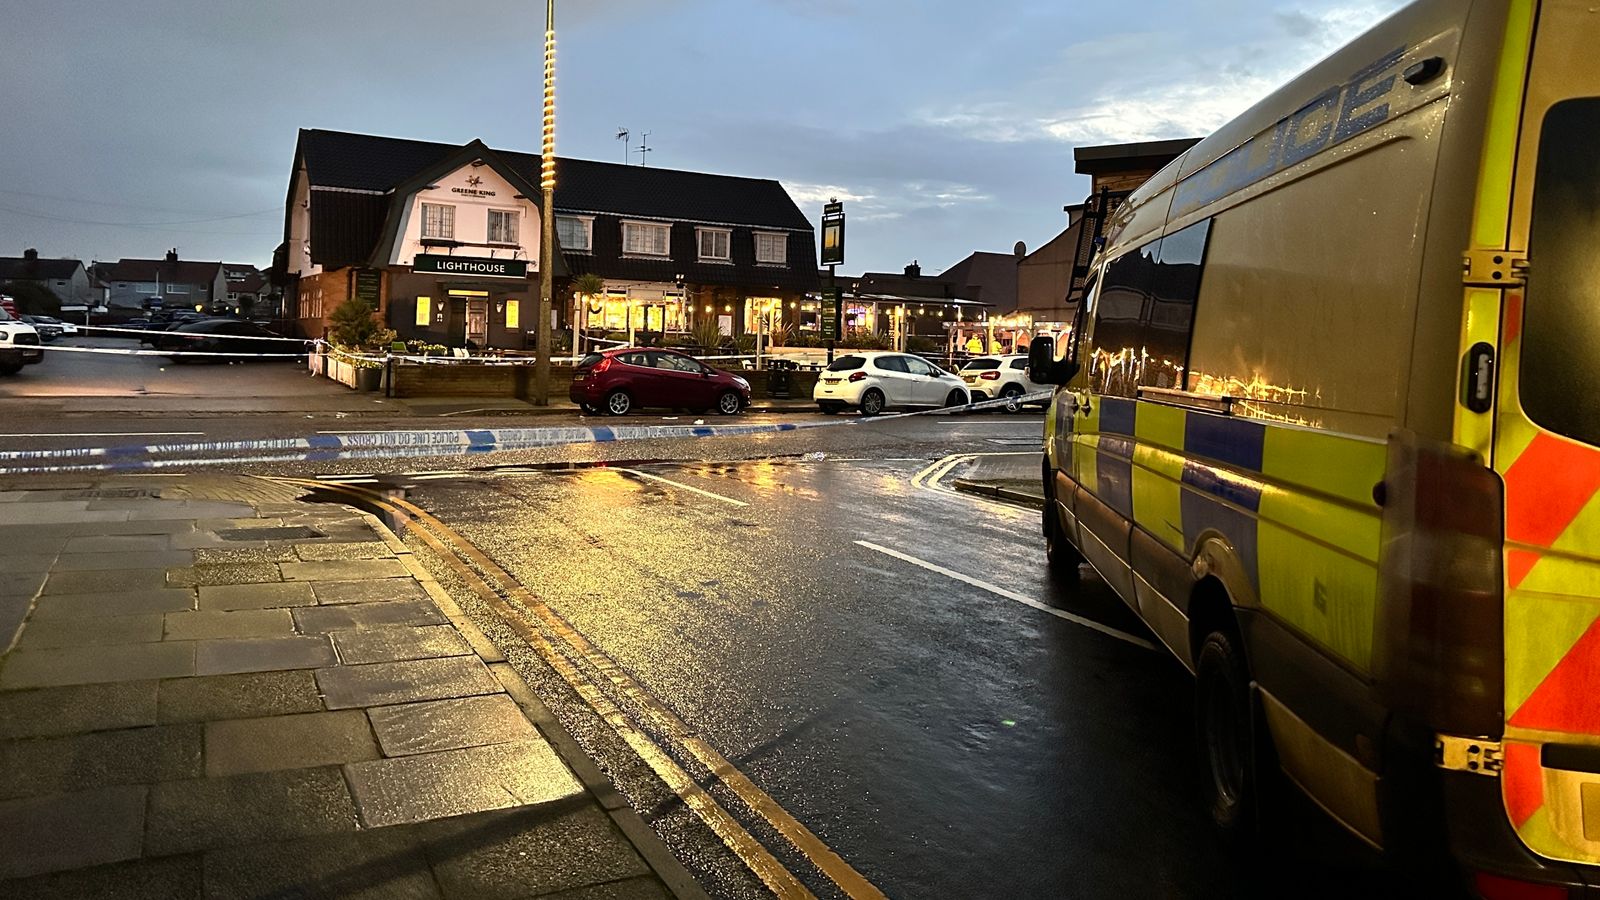 O femeie a murit și alte persoane au ajuns la spital după împușcăturile dintr-un pub în ajunul Crăciunului